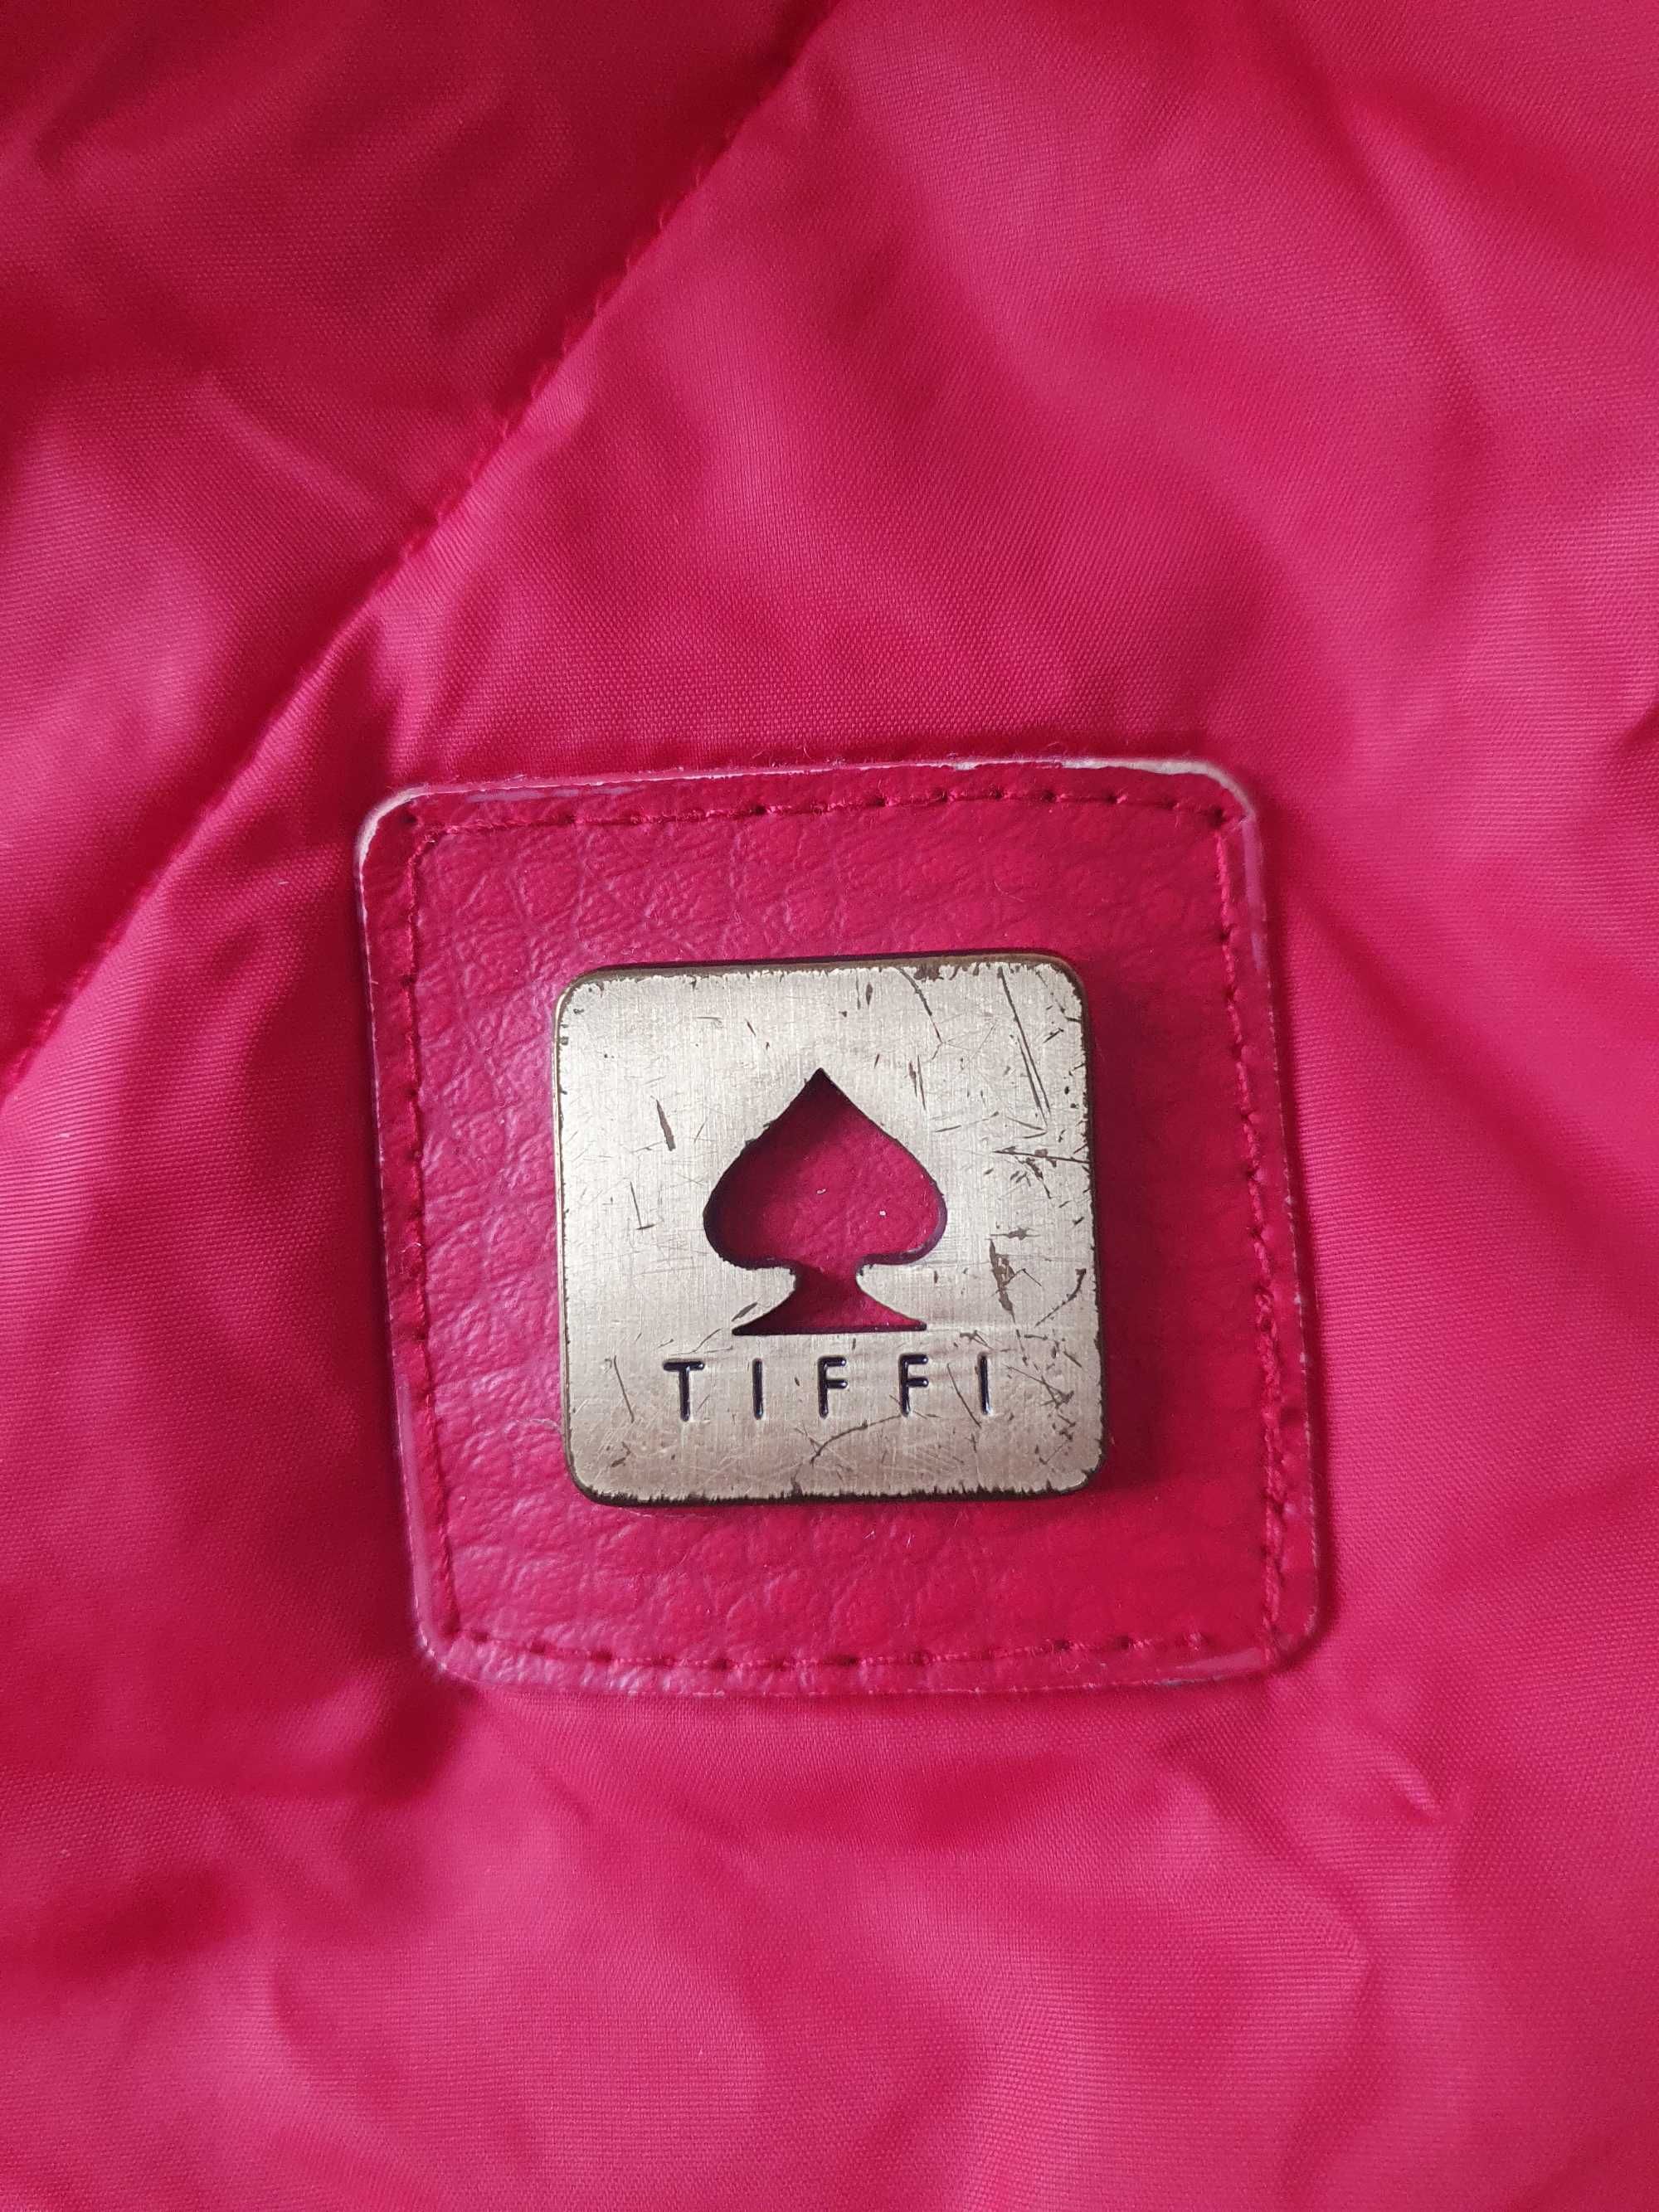 Praktyczna i efektowna kurtka damska marki Tiffi XS